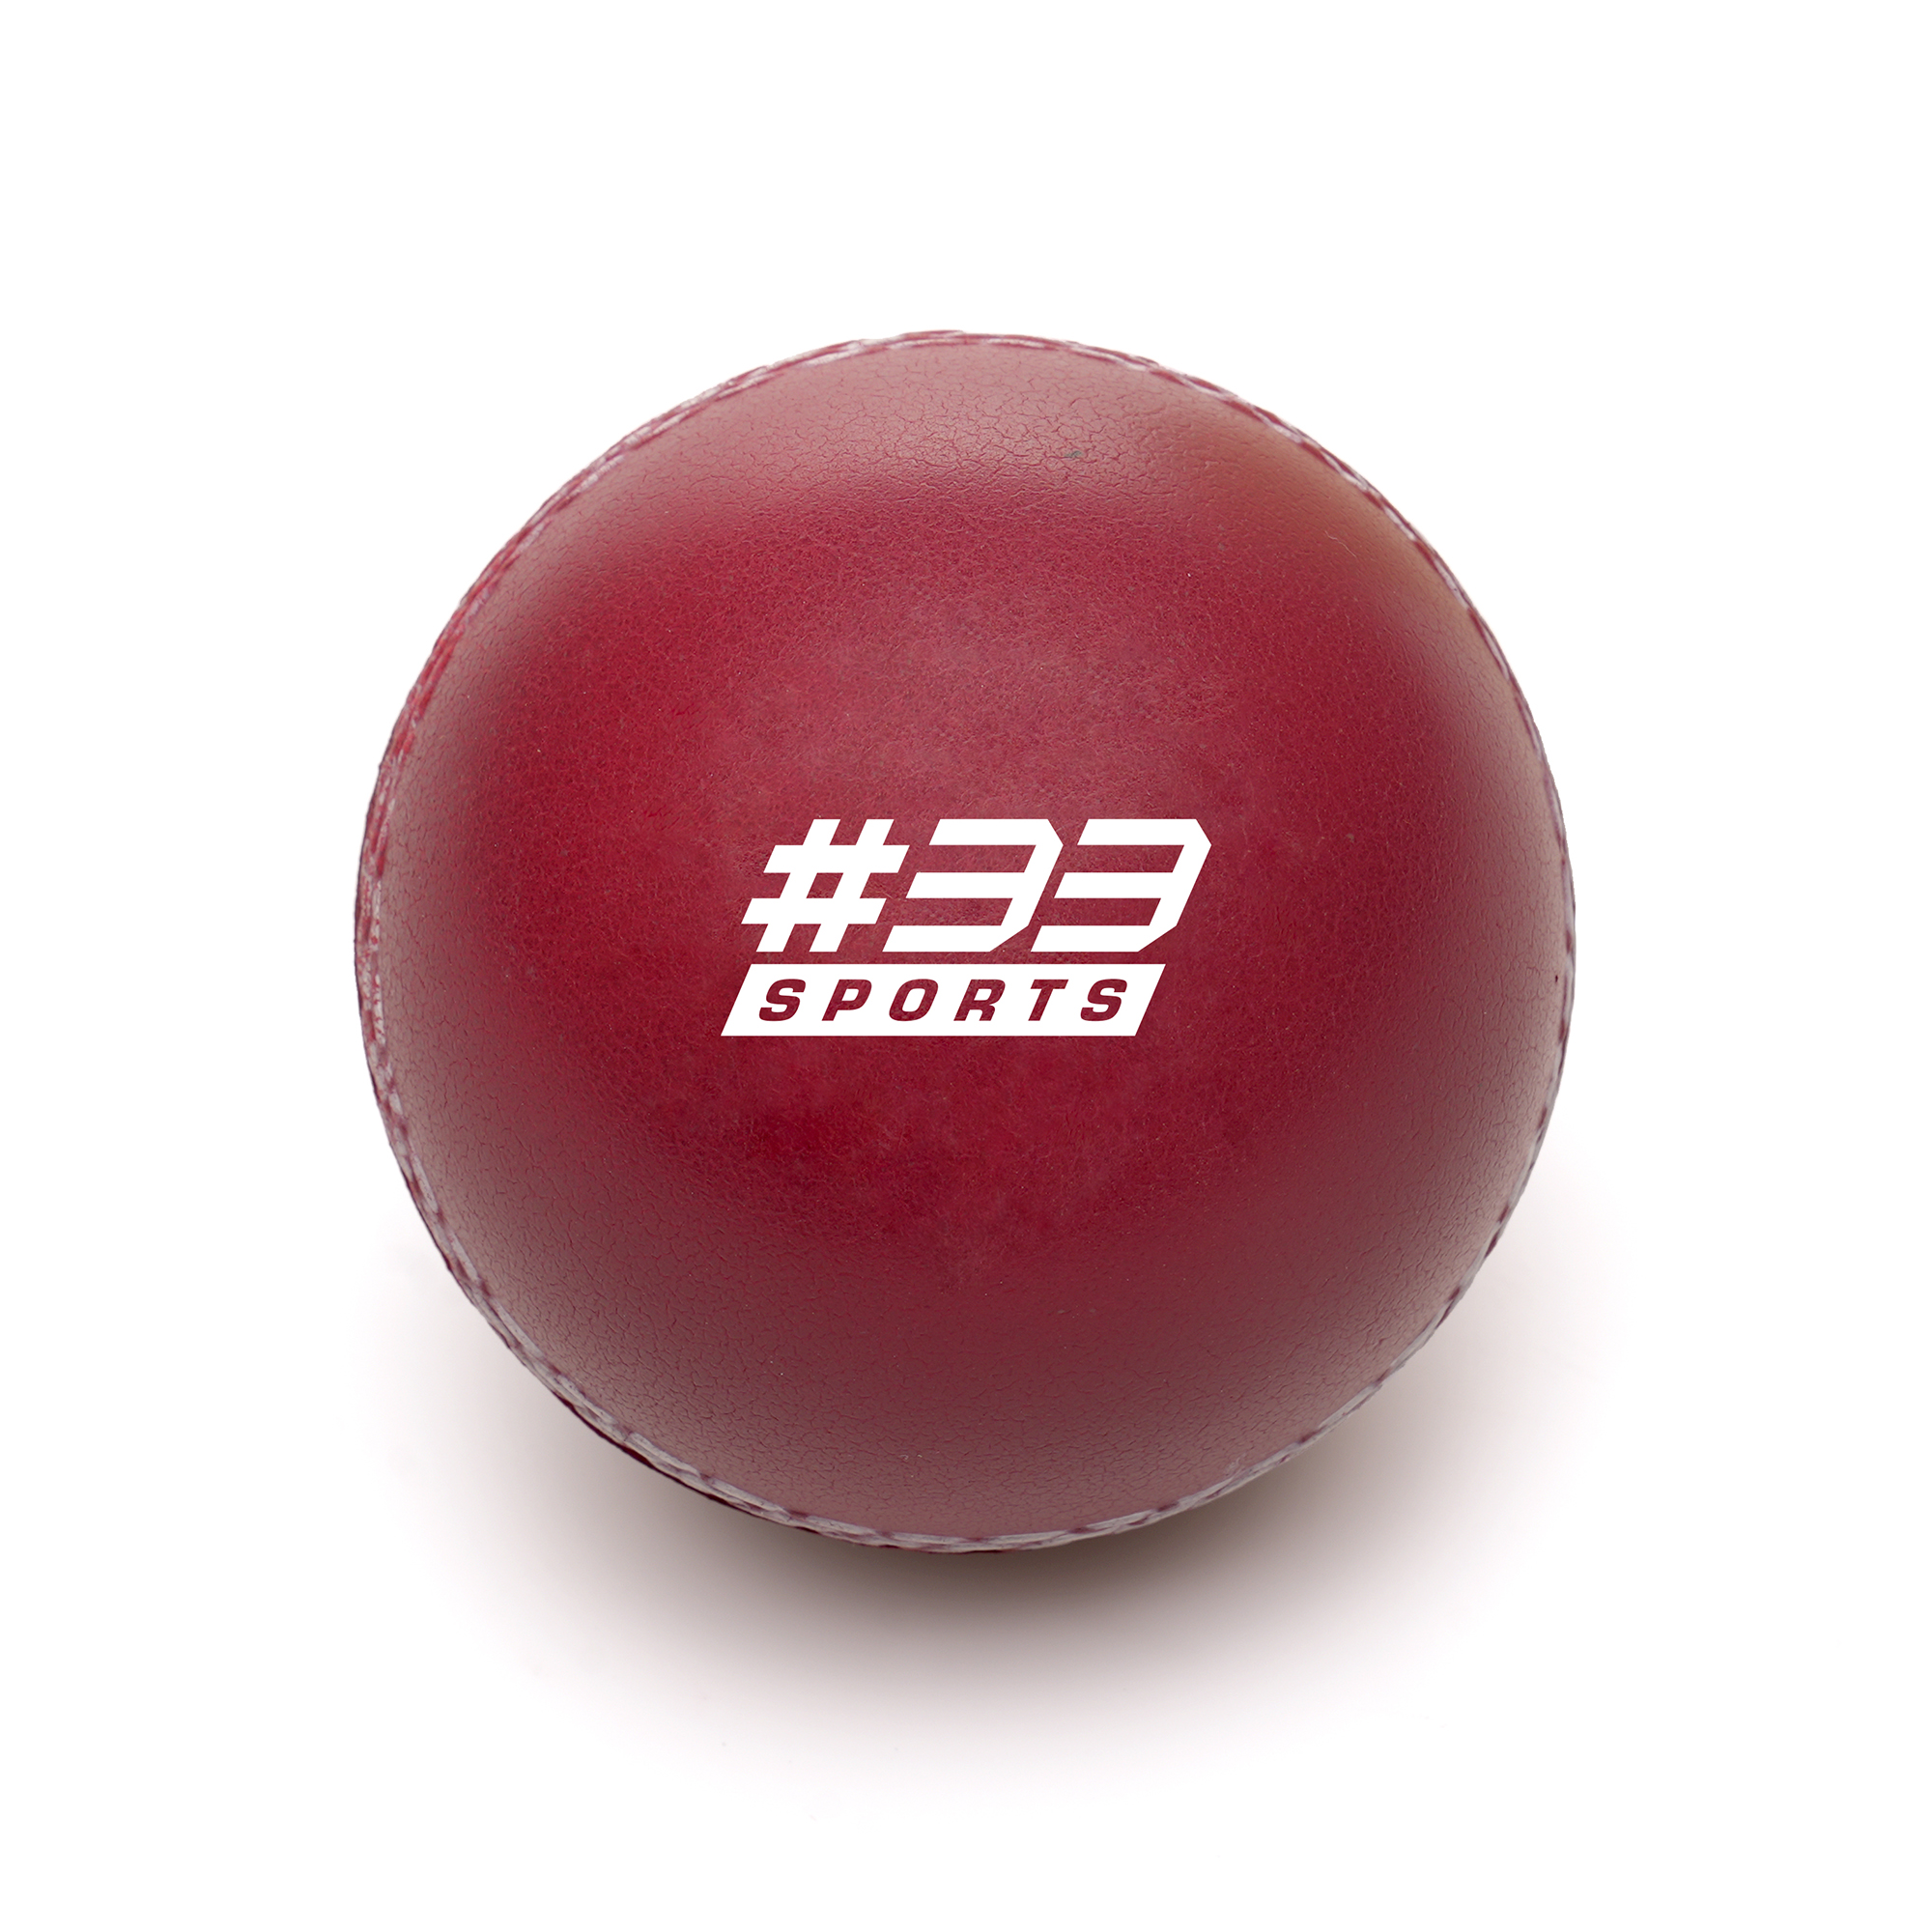 Cricket ball shaped PU stress toy.